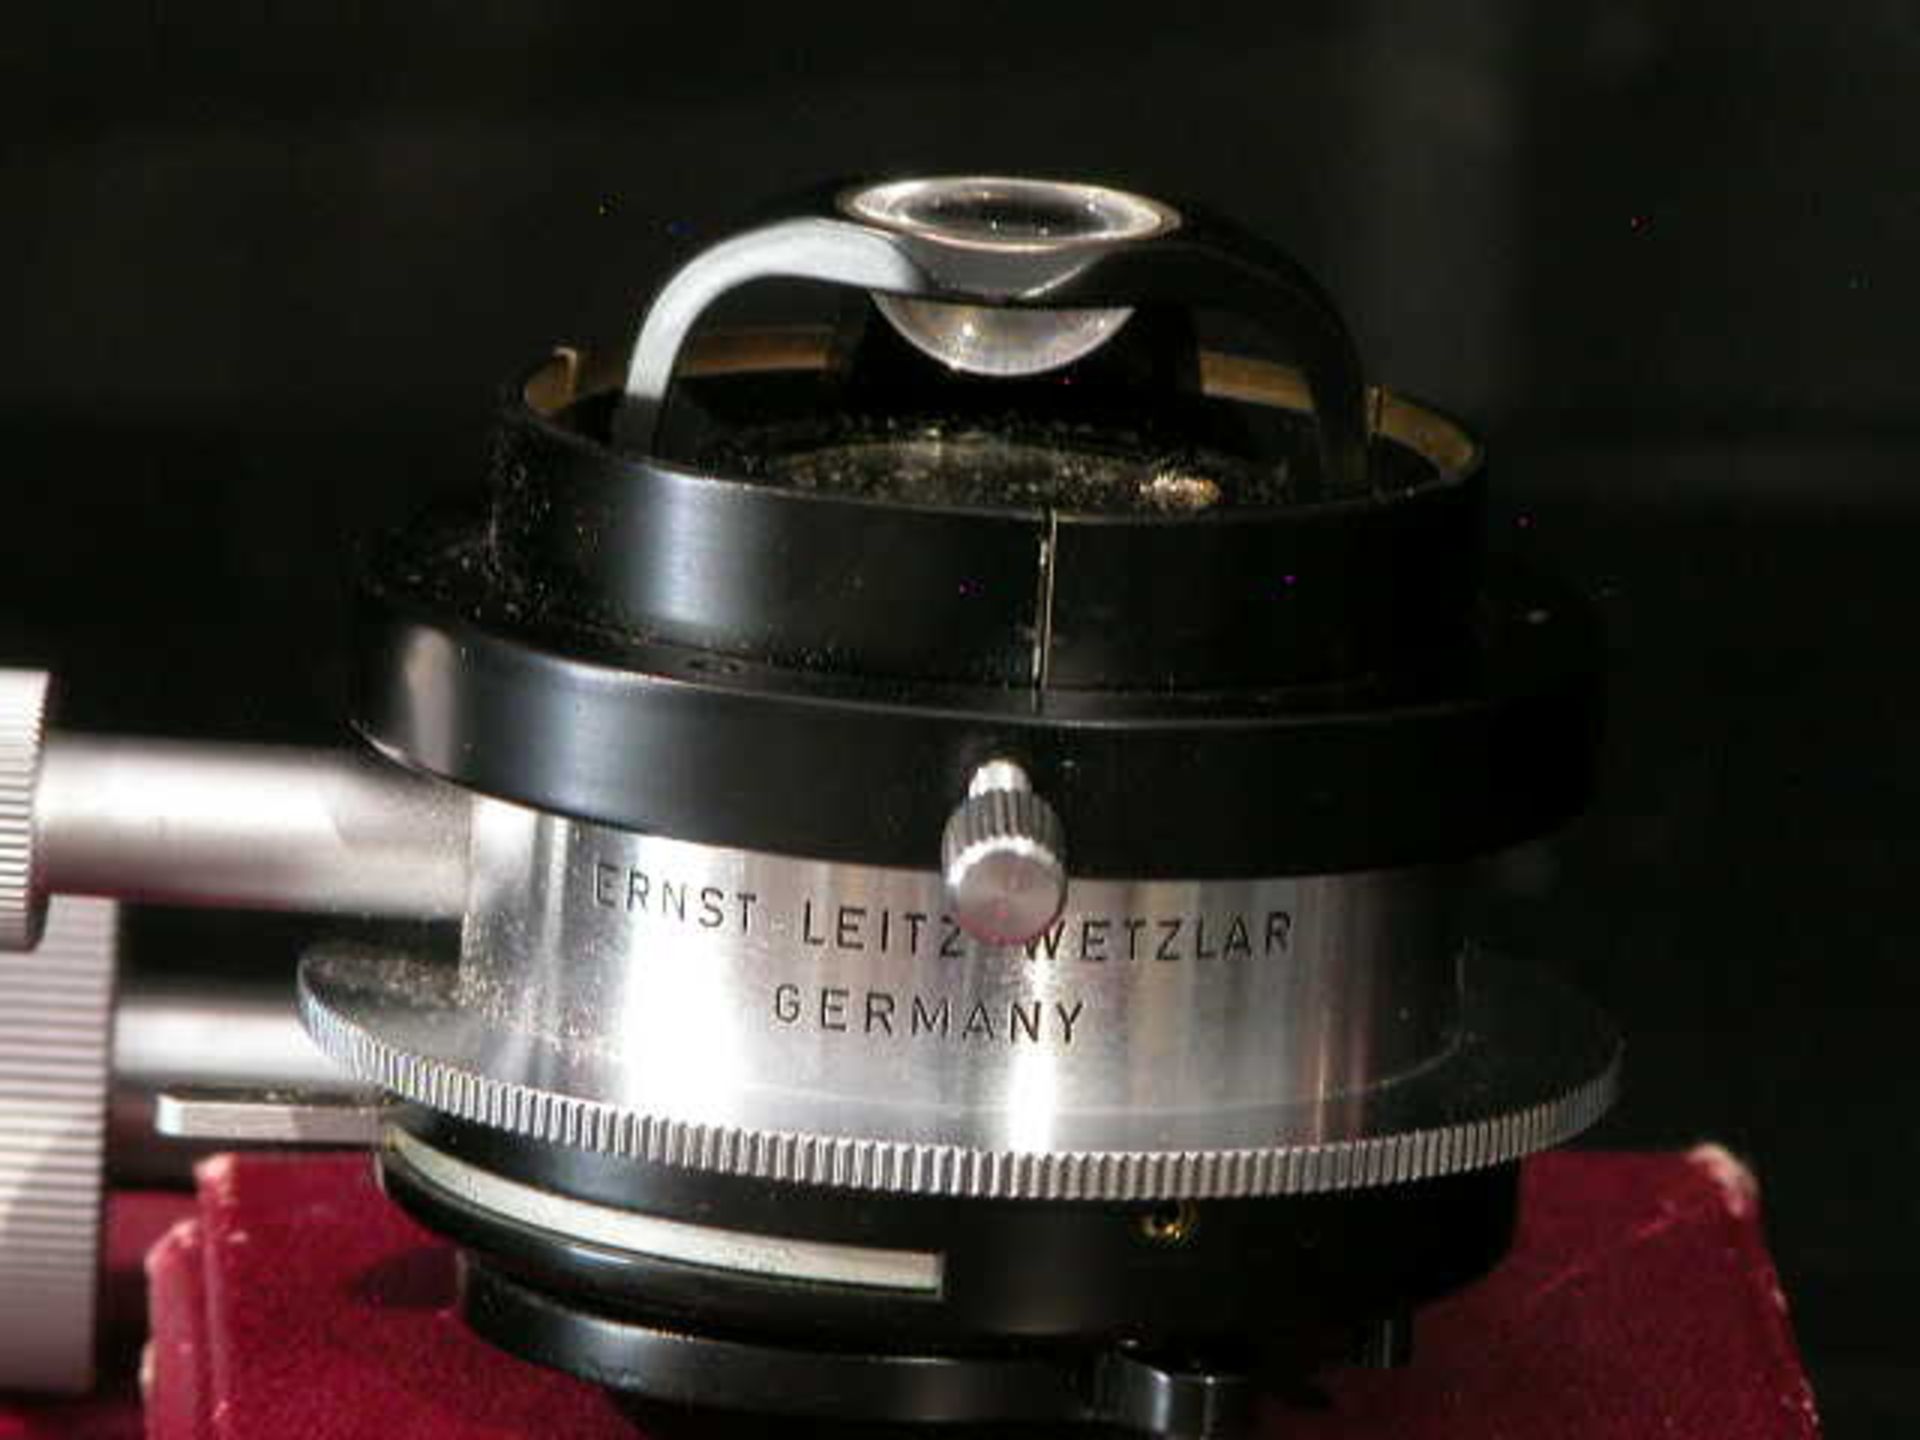 Ernst Leitz Wetzlar Low Power Microscope Condenser, Qty 1, 323410830997 - Image 7 of 8